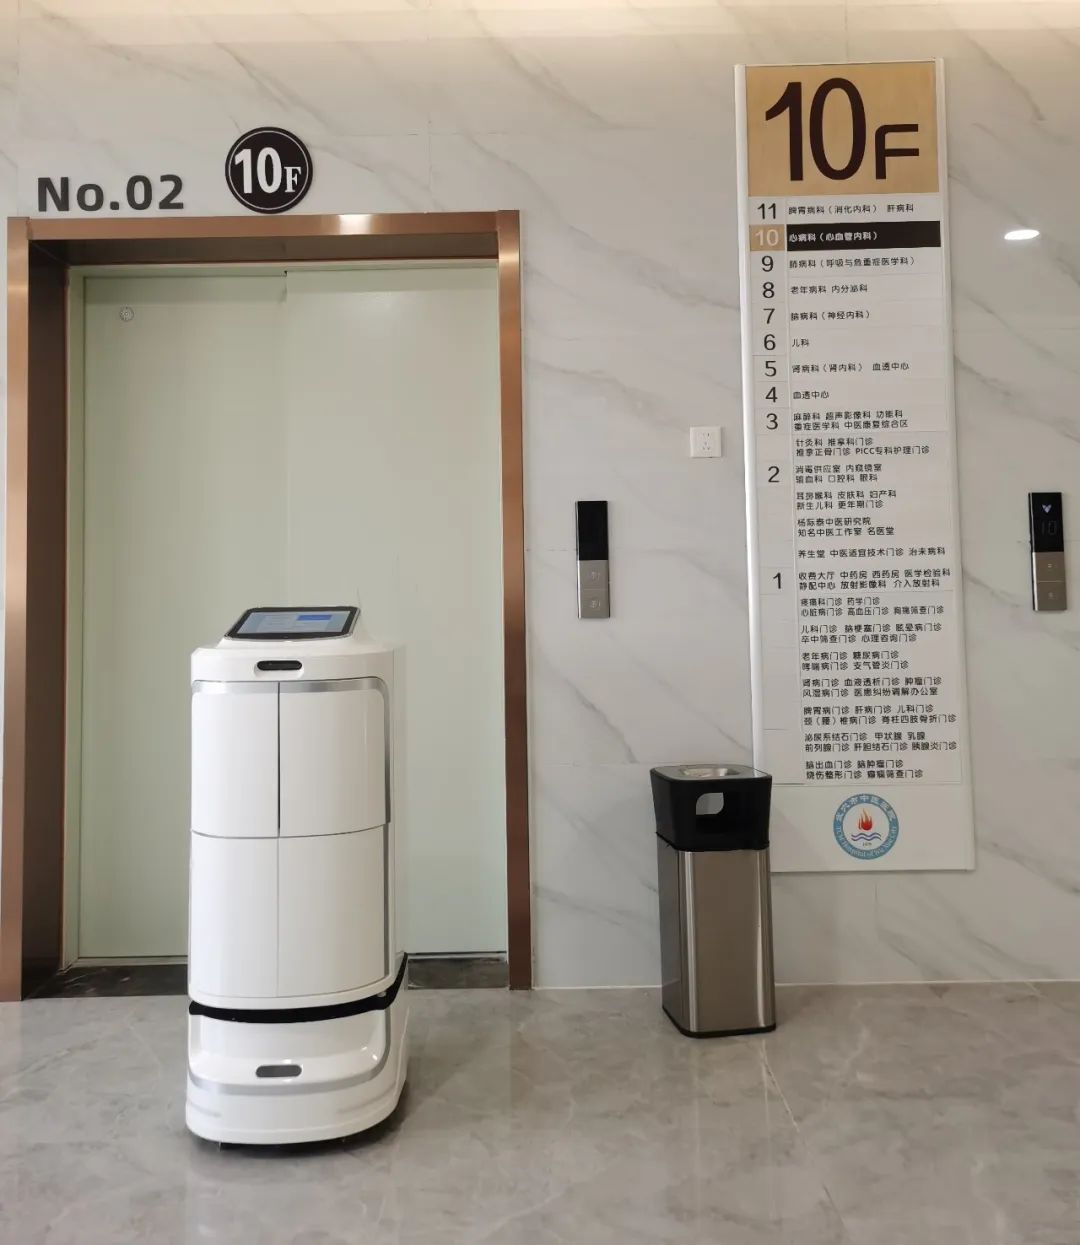 Tecnologia inovadora para auxiliar no tratamento médico: Alpha robotics três séries de robôs no caso de aplicação “Hospital Municipal de Medicina Tradicional Chinesa de Wuxue”!